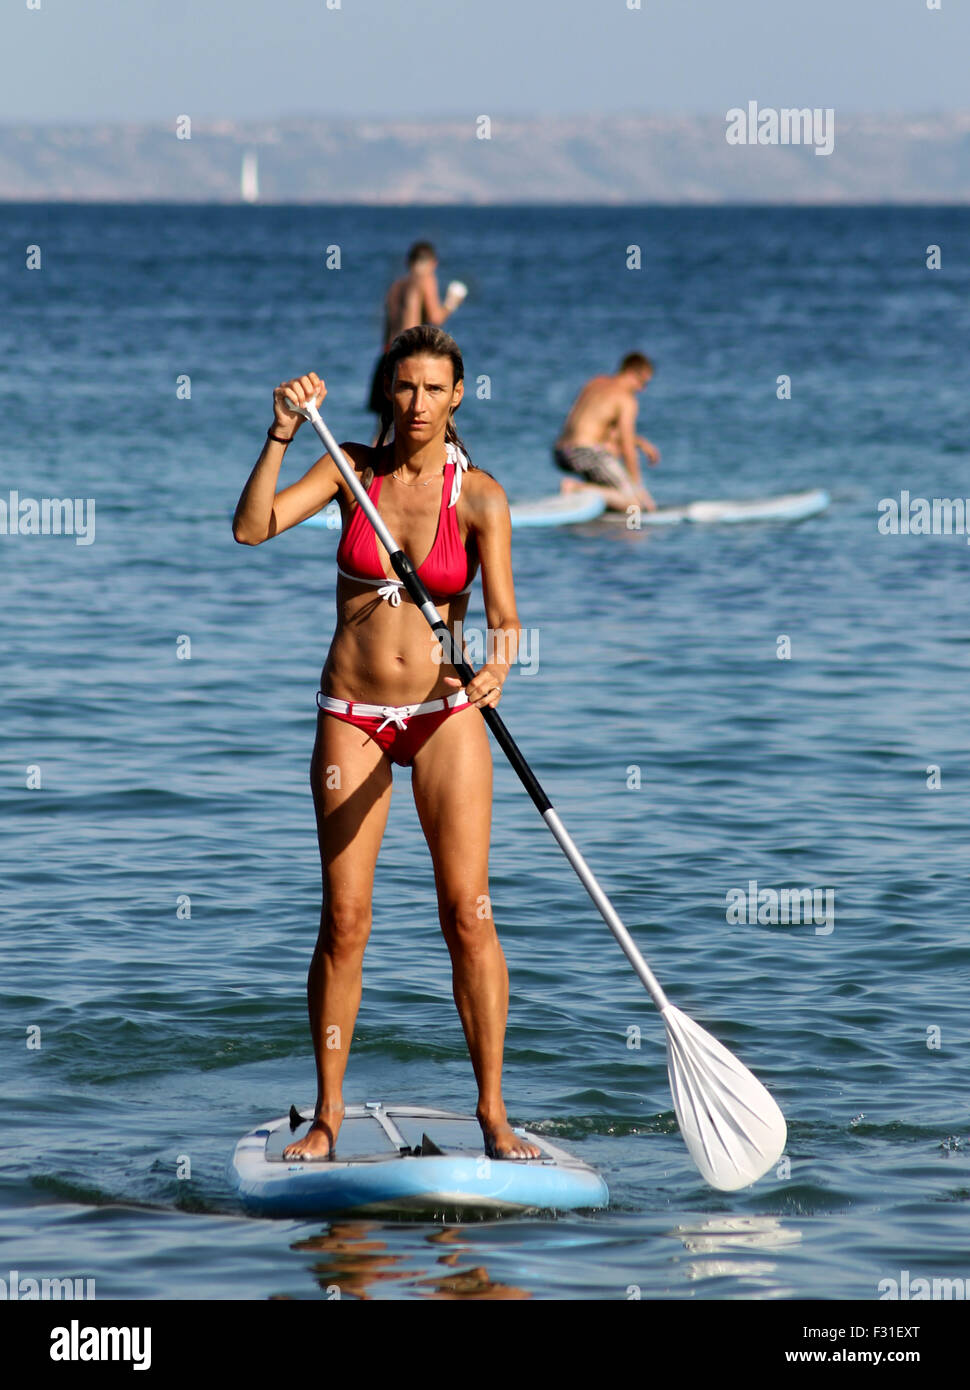 La plage de Palma Nova, Majorque, Espagne - 25 août 2015 : Palma Nova beach resort le 25 août 2015. Une jeune femme est paddle bo Banque D'Images